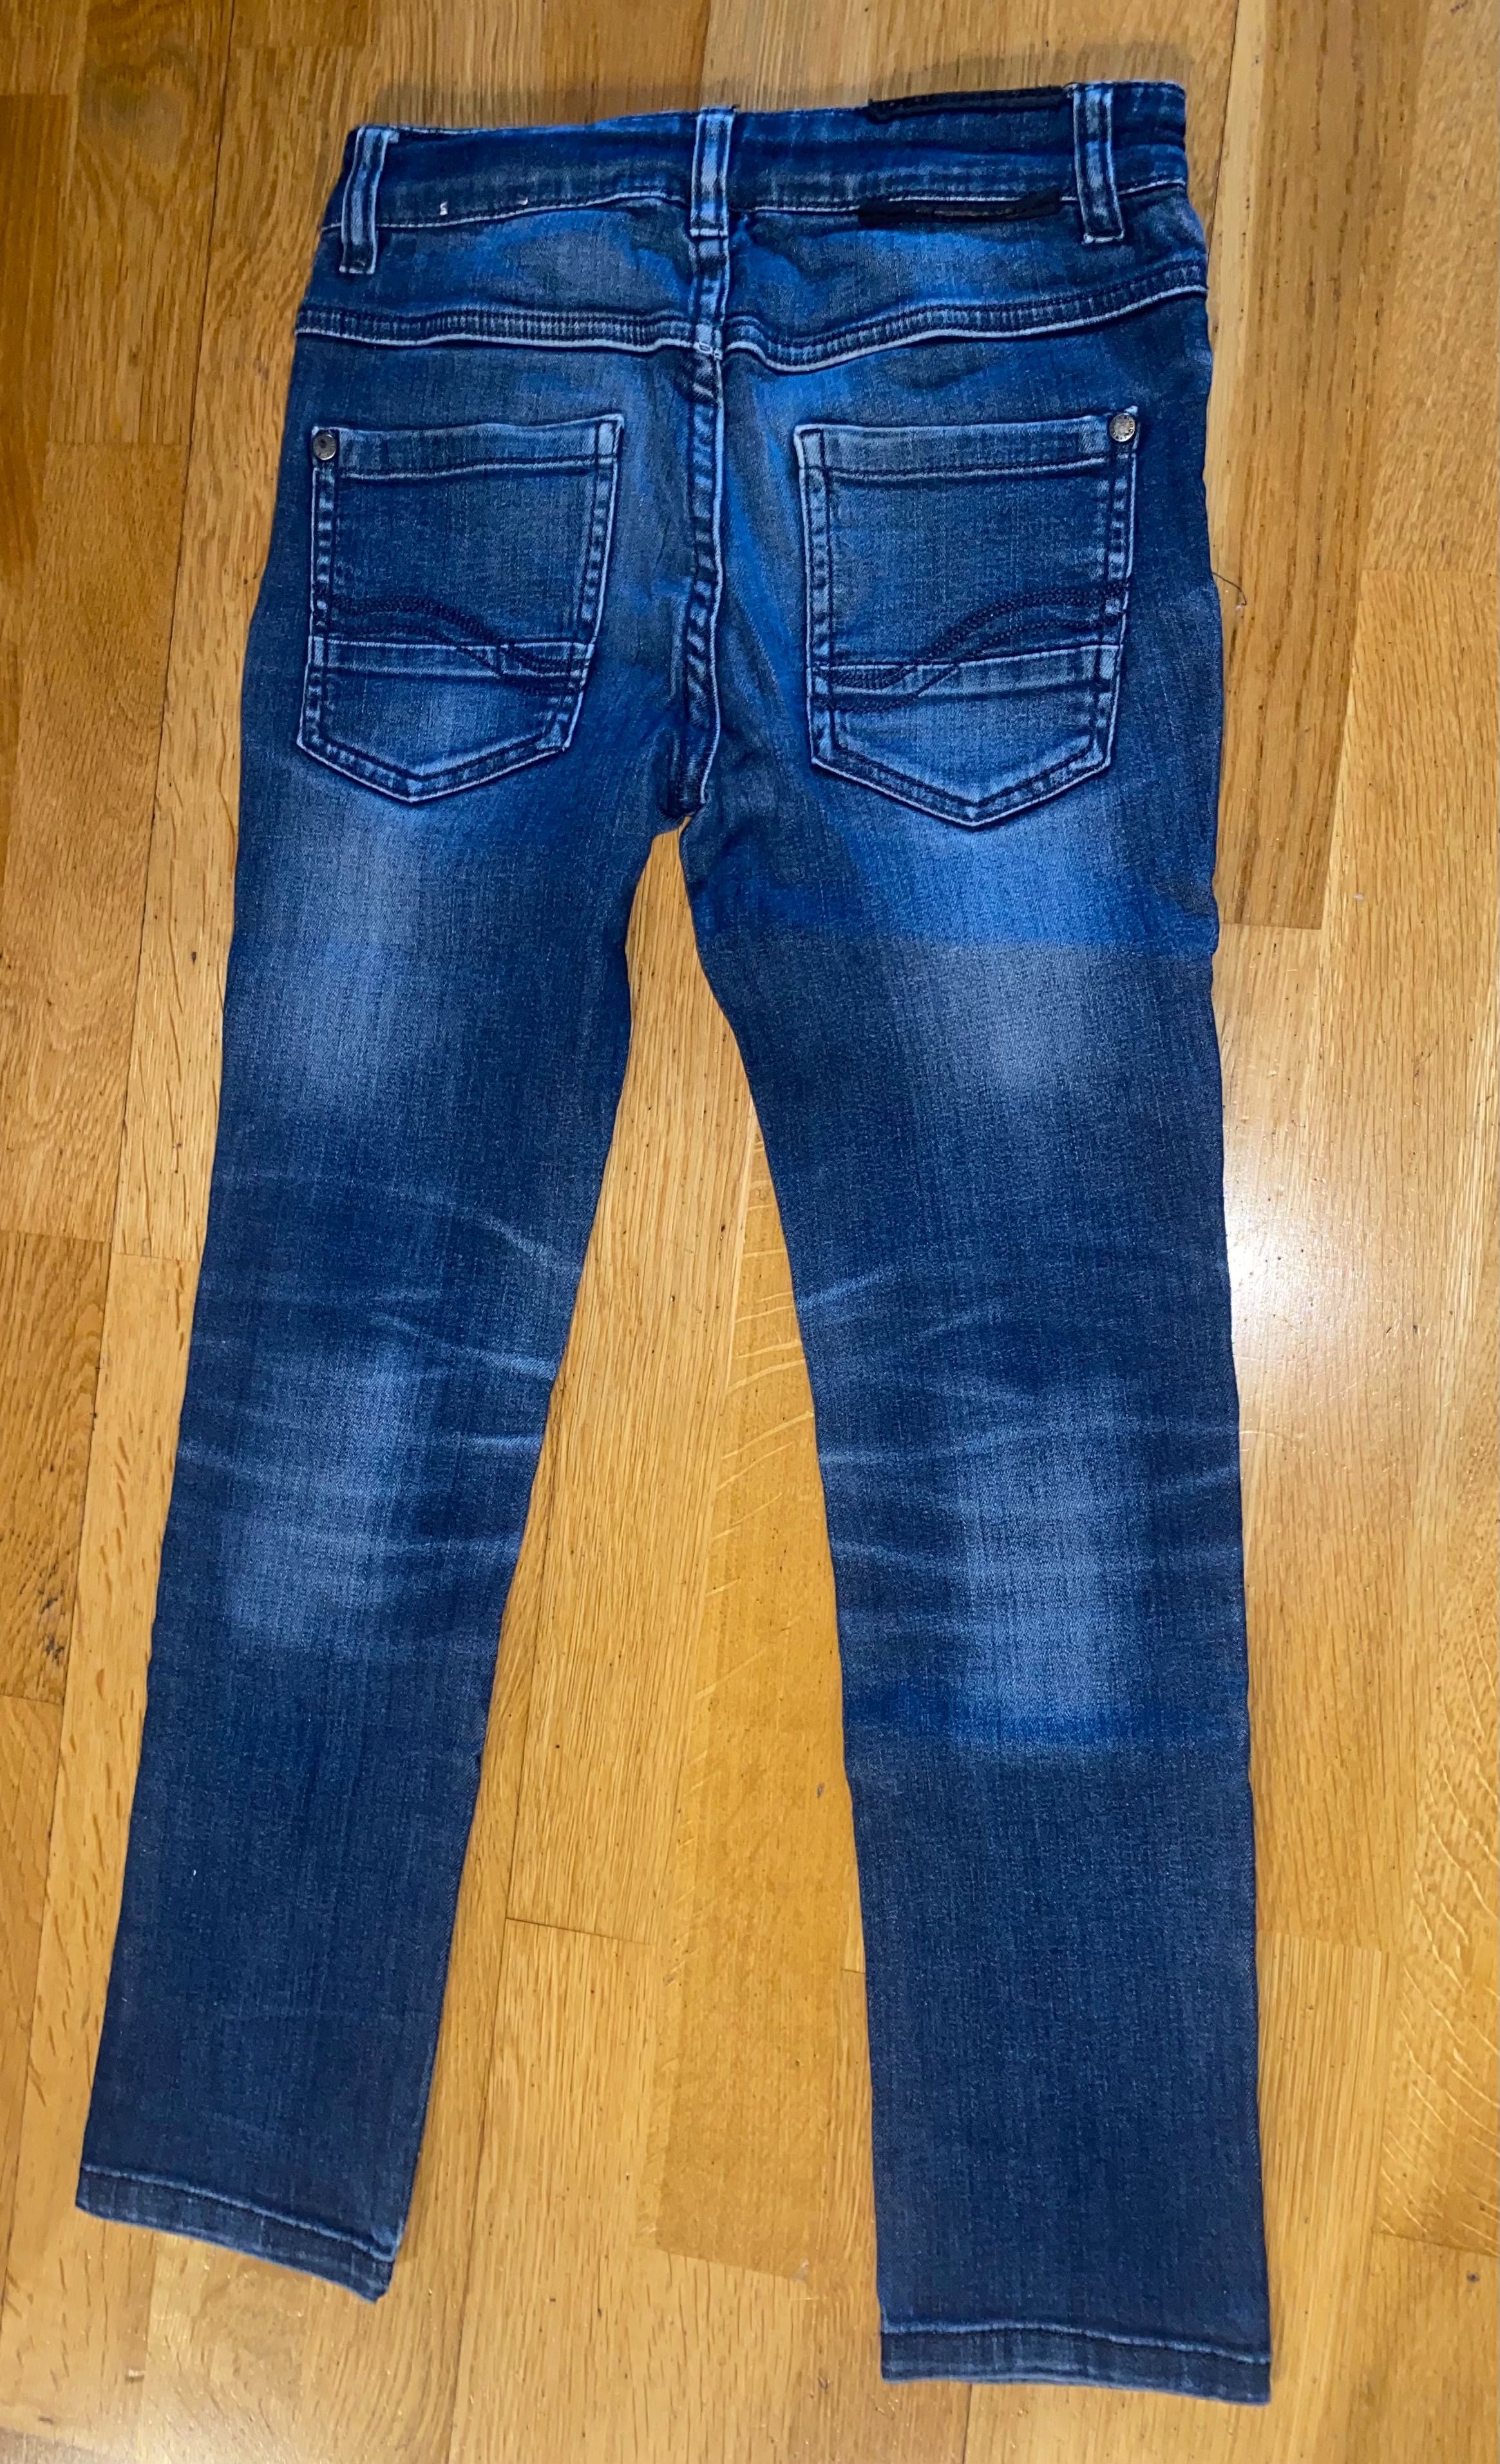 Jeansy spodnie granatowe chłopięce 128